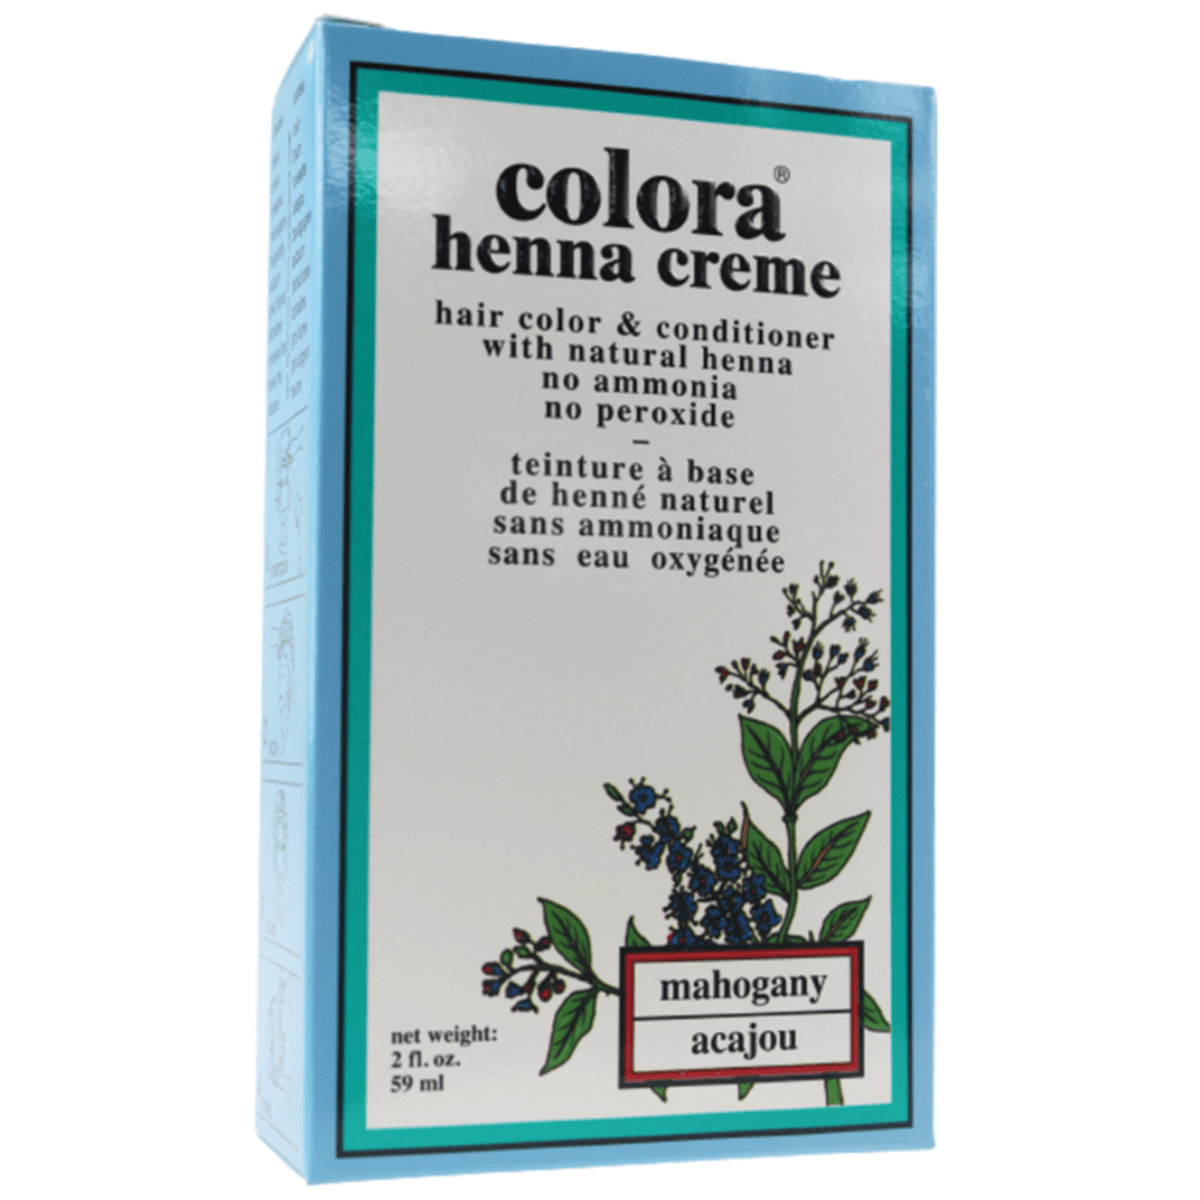 Colora Henna Creme Mahogany 59mL Hair Colour at Village Vitamin Store